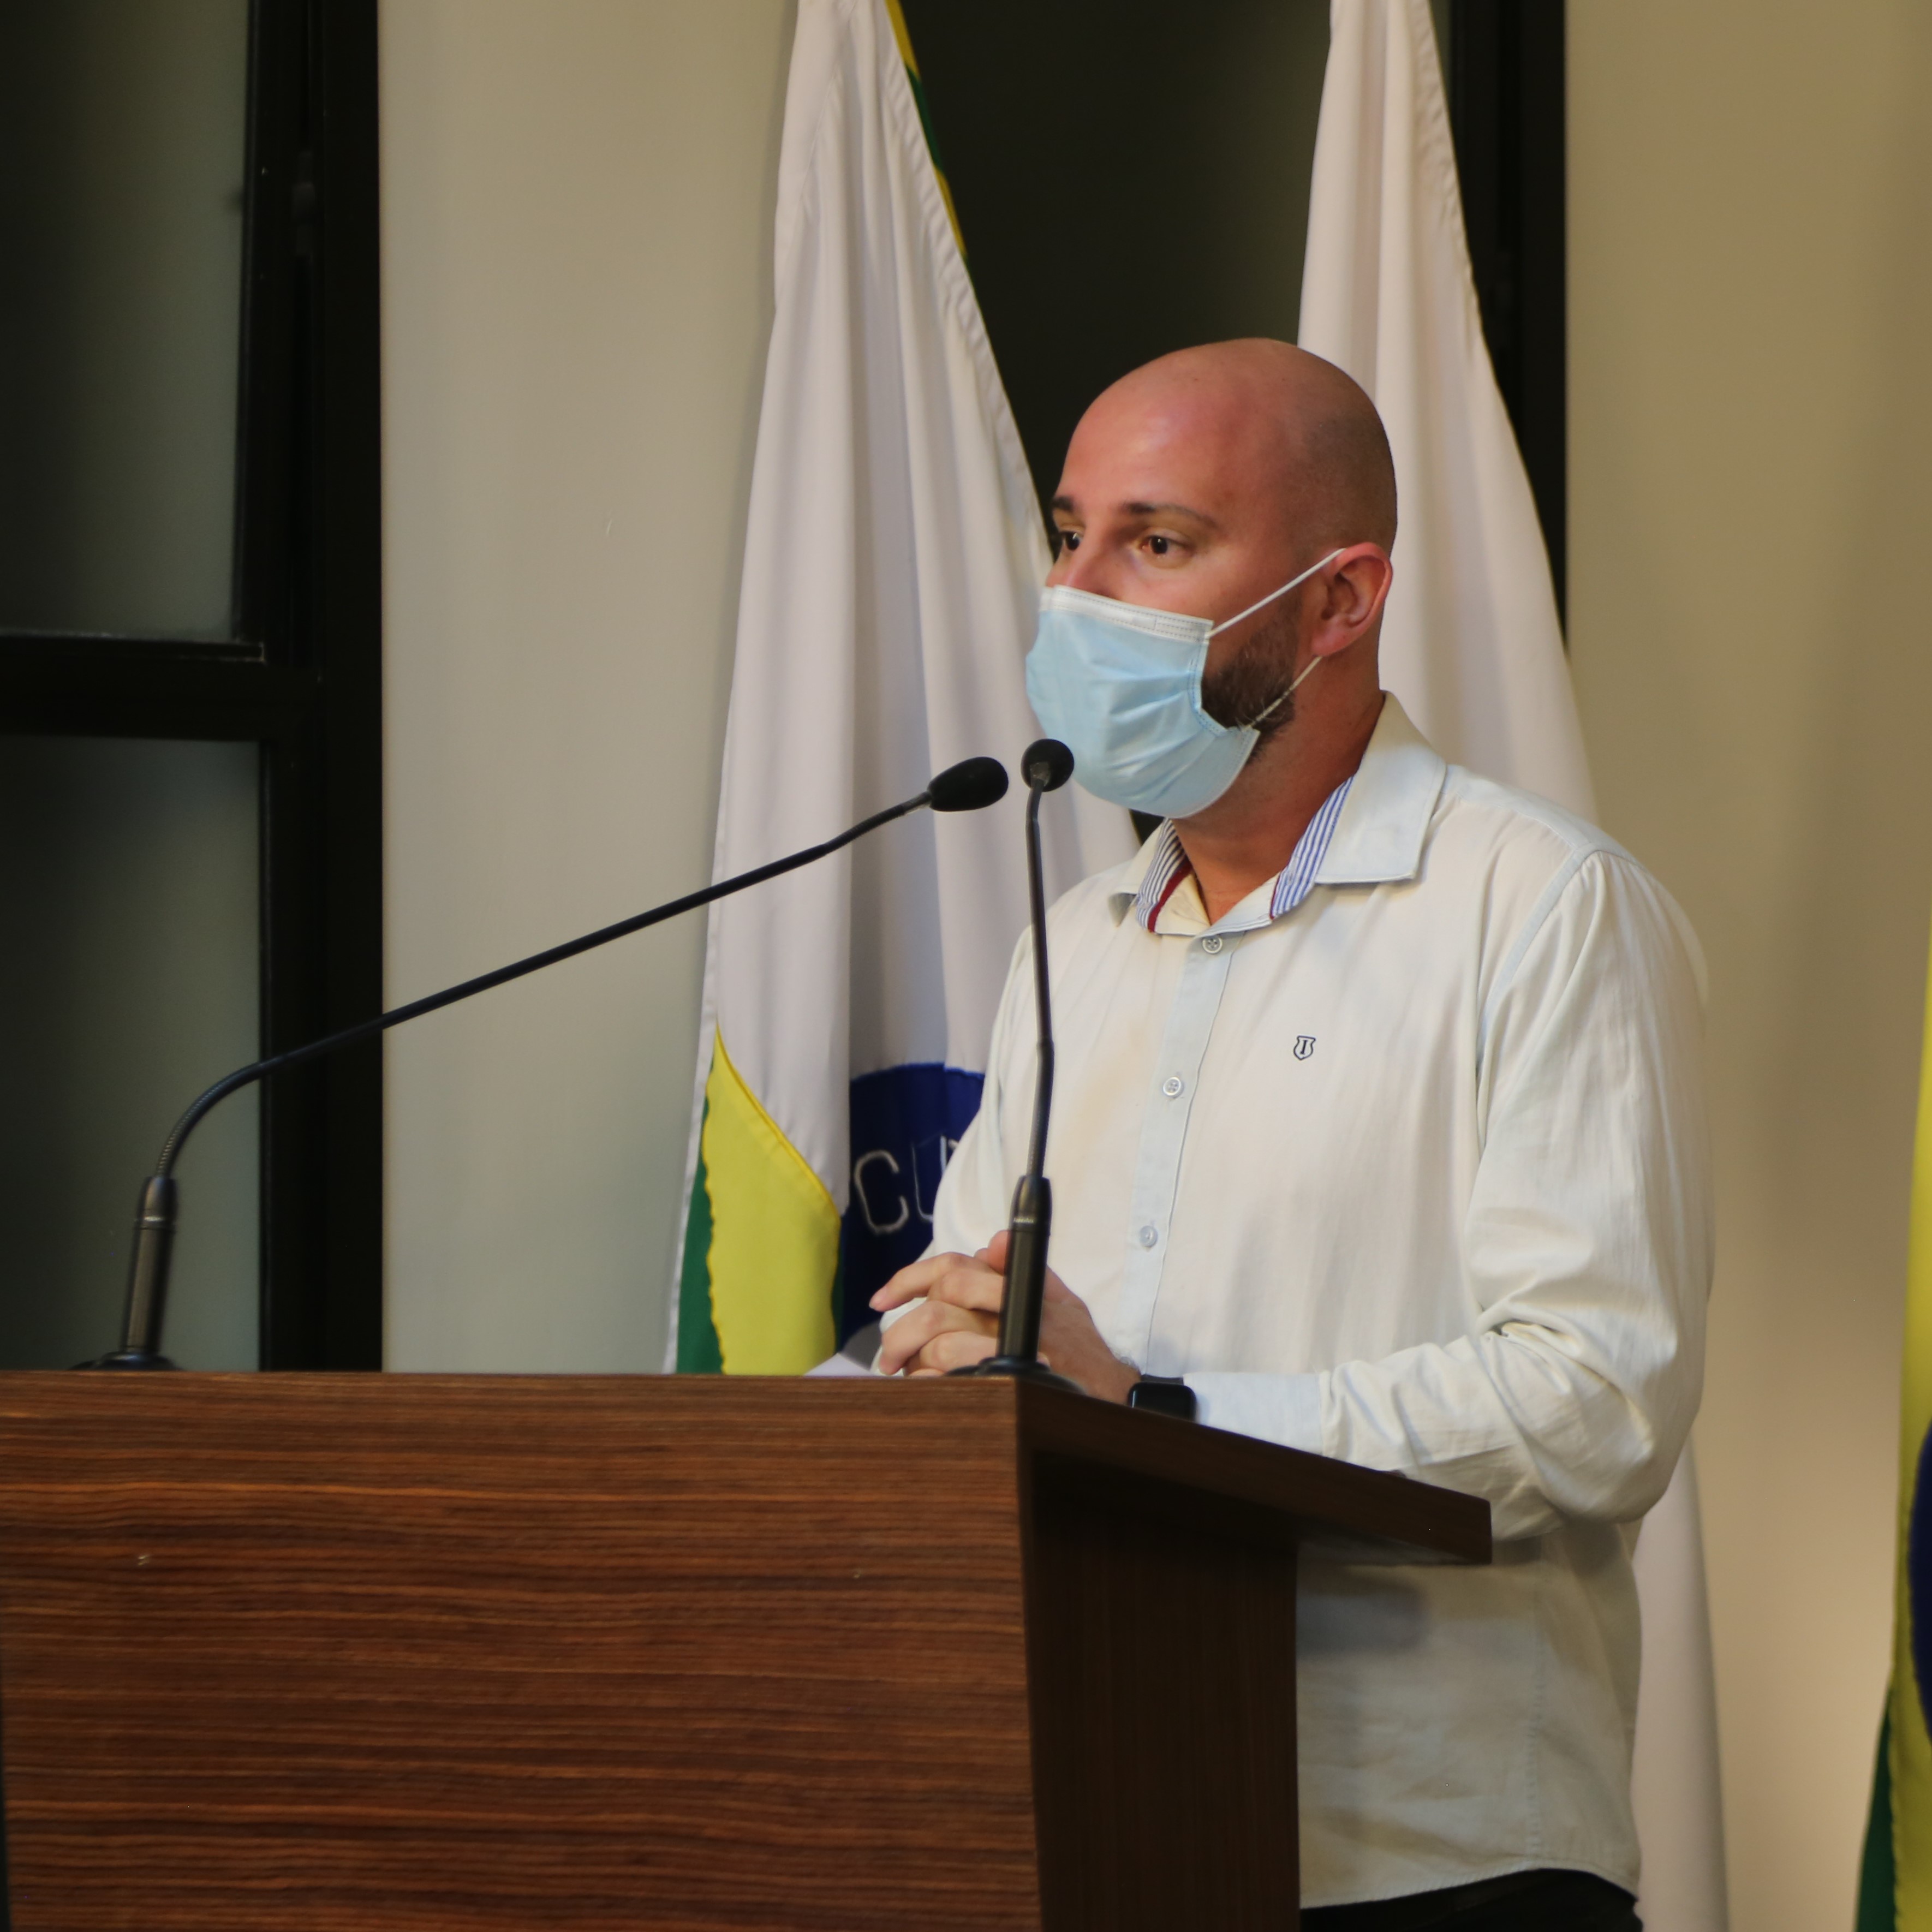 Vereador Cristiano Gonçalves (Cristiano Moto Link) (Solidariedade), Presidente da Comissão de Trânsito e Mobilidade Urbana